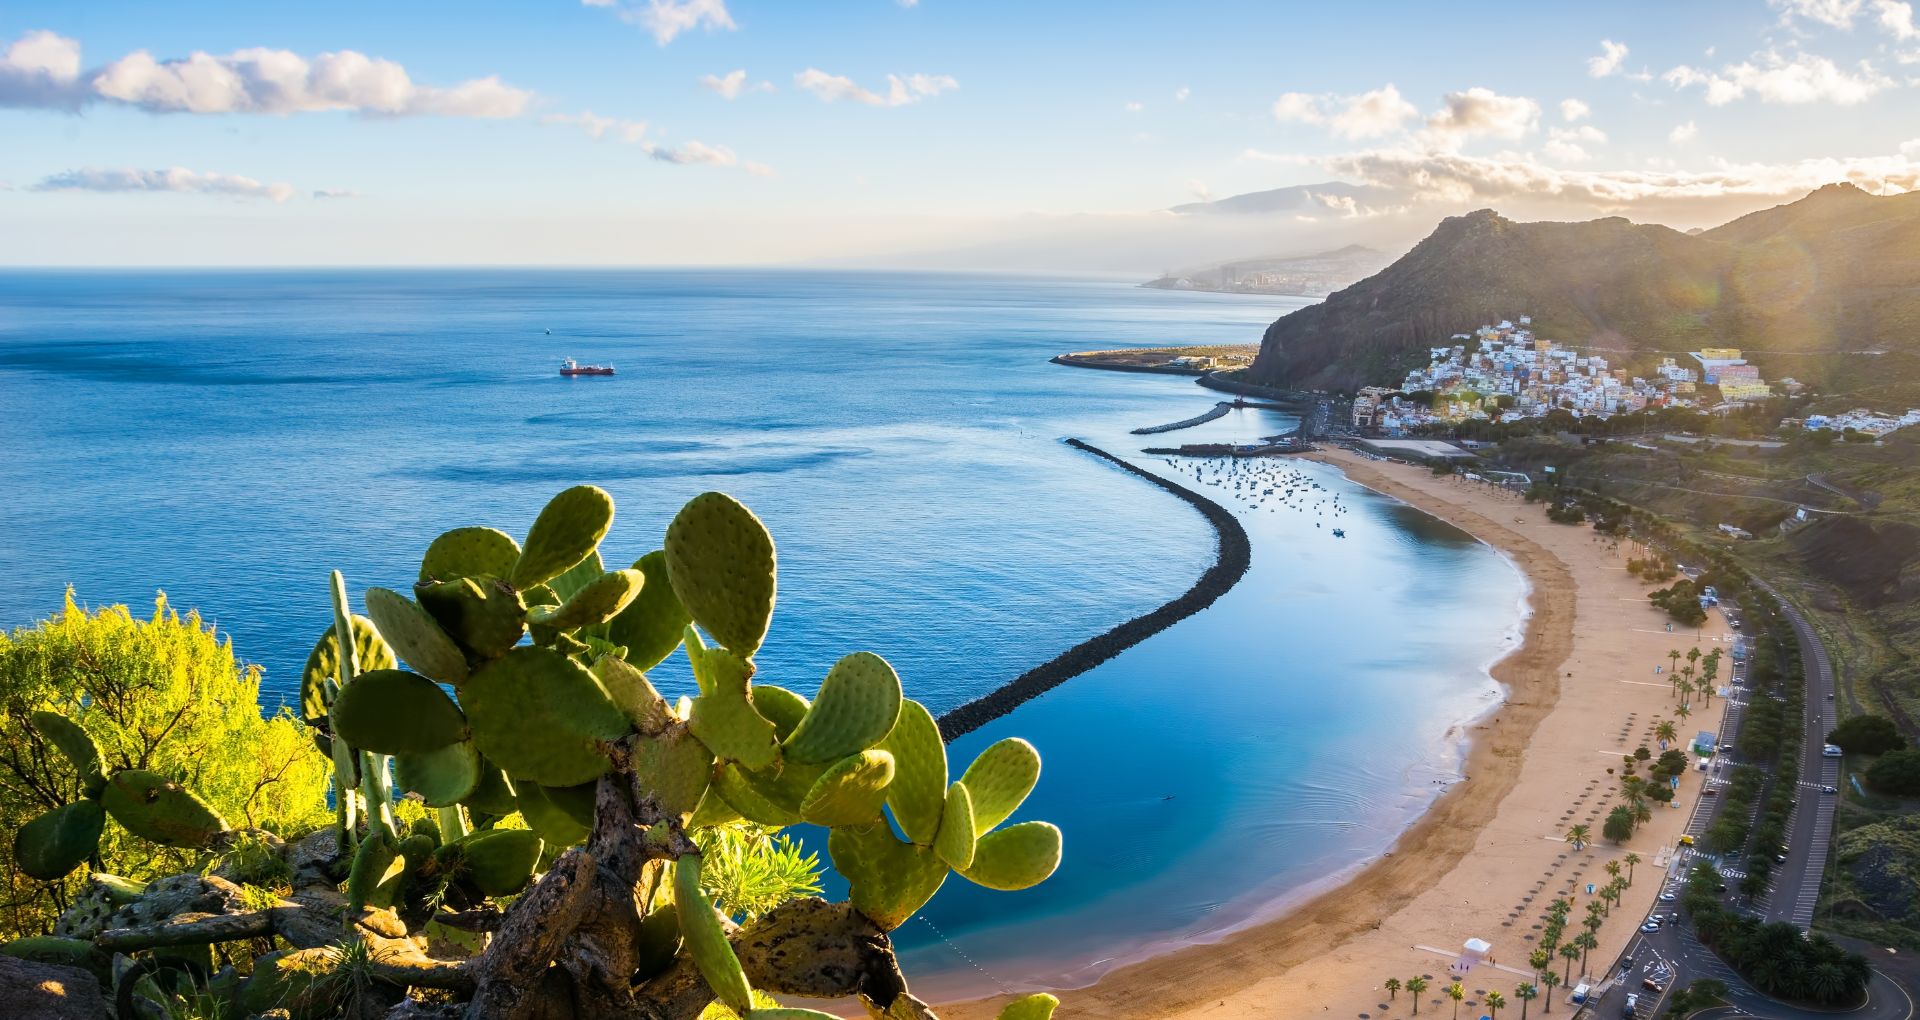 Vue d'ensemble, paysage des Canaries, mer entourée de falaises et cactus